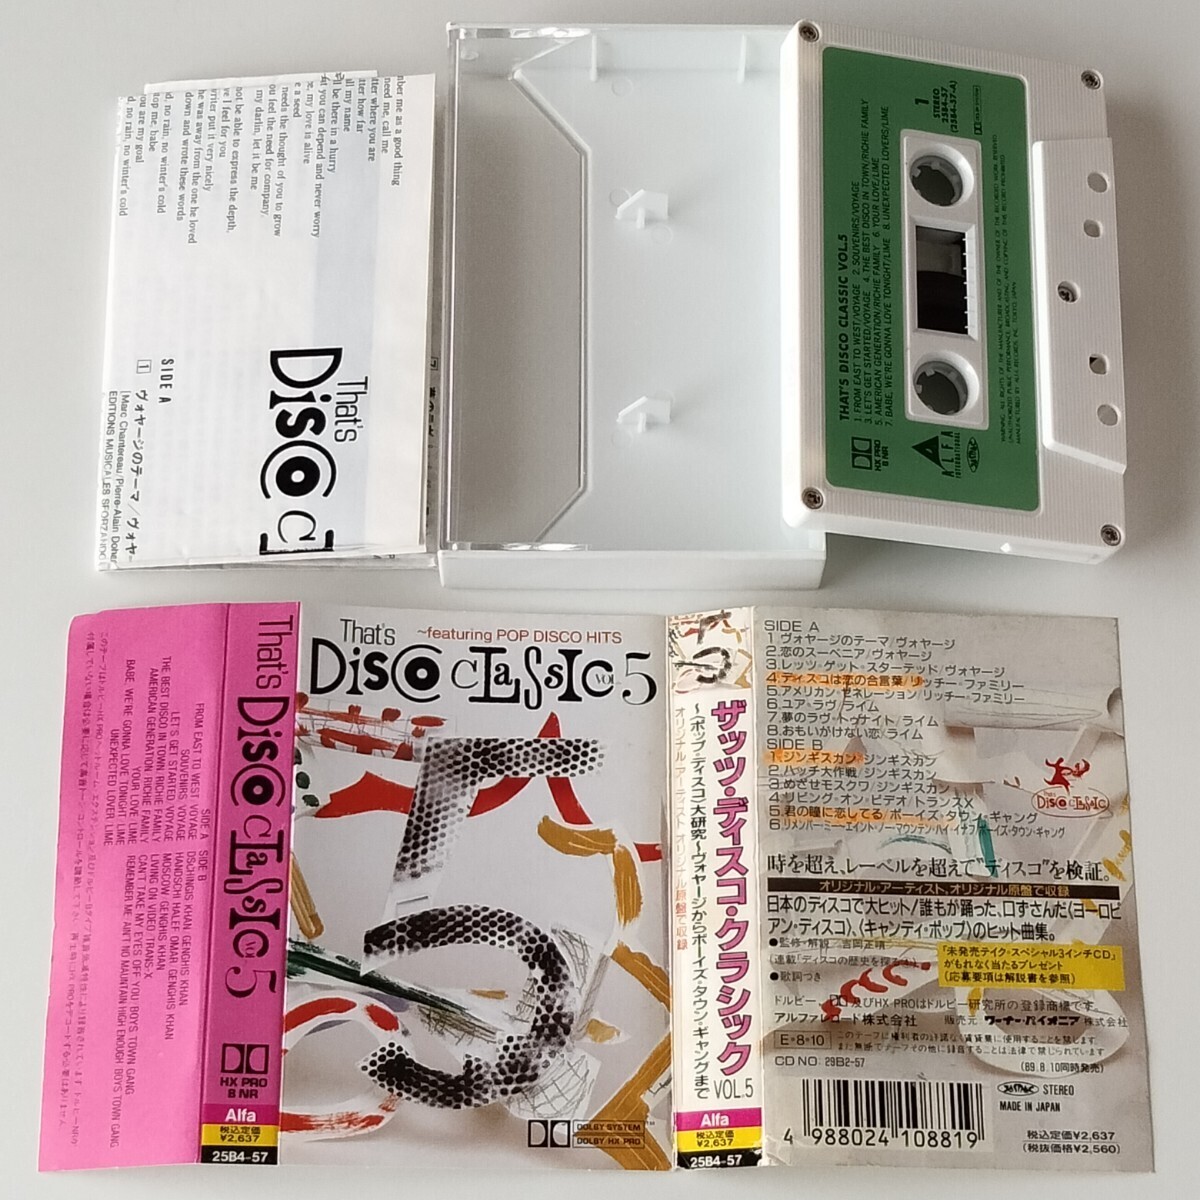 【カセットテープ】THAT'S DISCO CLASSIC VOL.5(25B4-57)ザッツ・ディスコ・クラシック/ALFA/POP DISCO HITS/VOYAGE/BOYS TOWN GANG_画像4